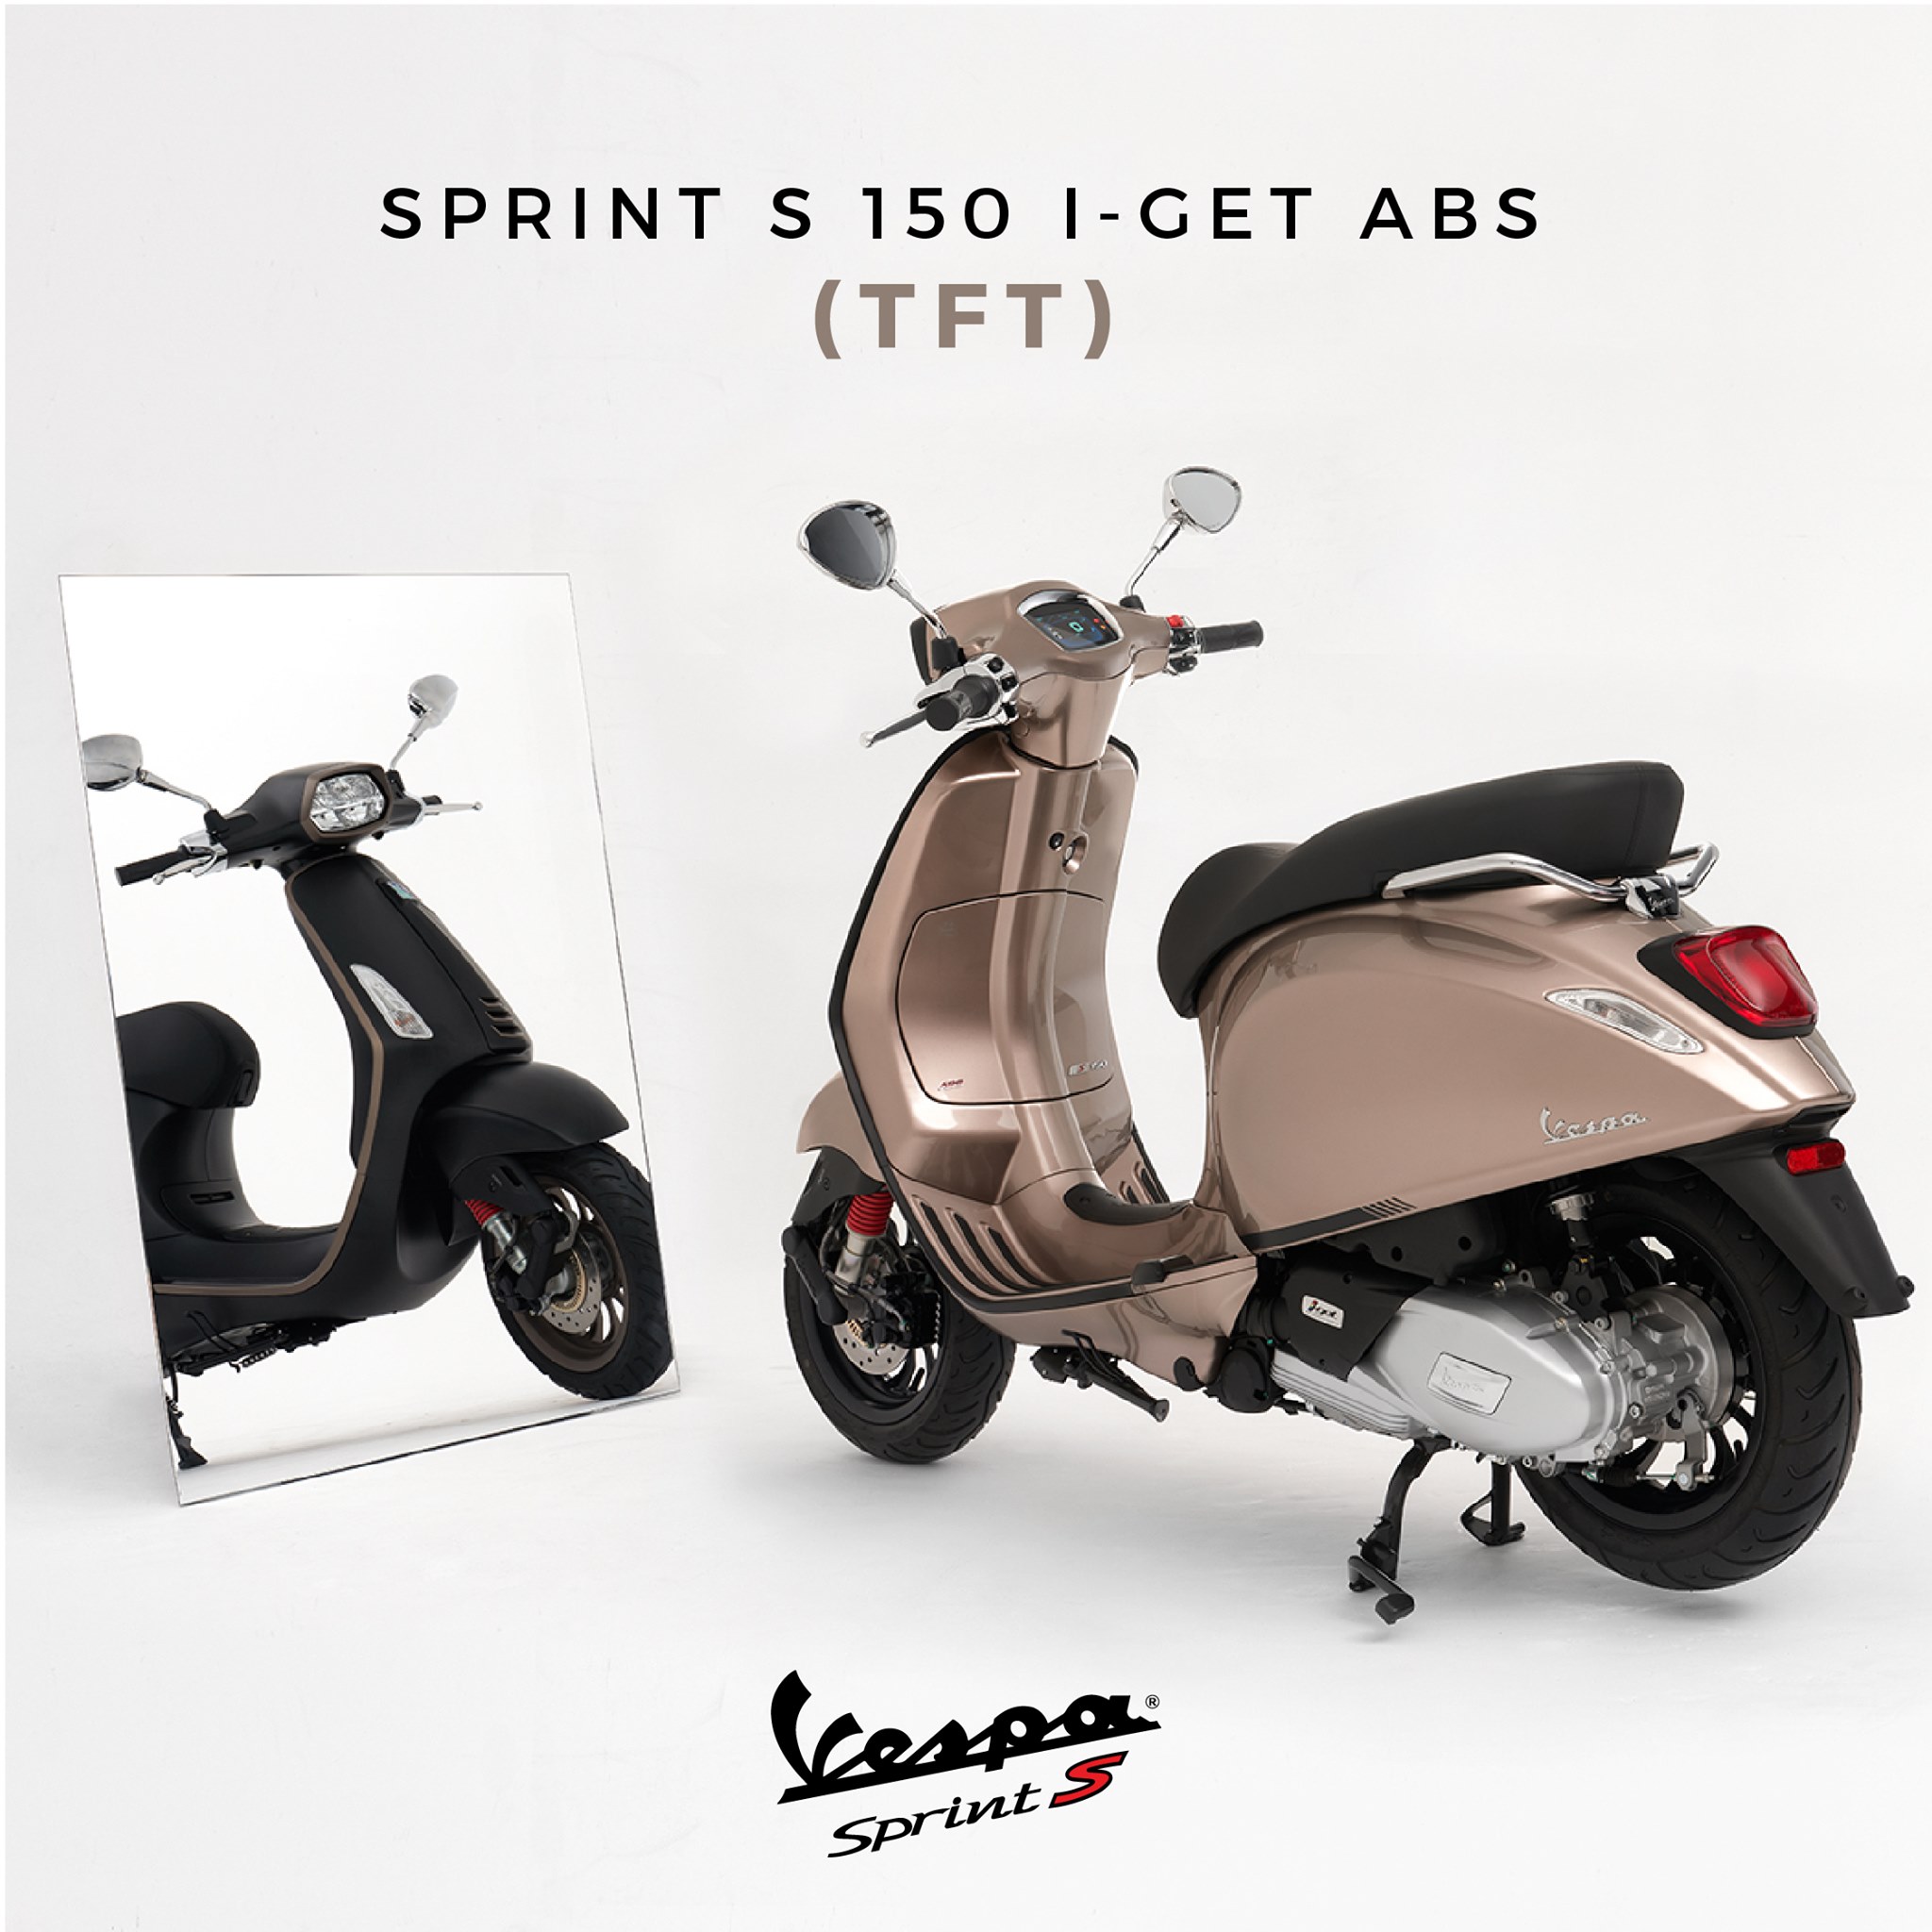 Vespa Sprint S 150 i-Get ABS สัมผัสประสบการณ์การขับขี่ที่มากกว่า